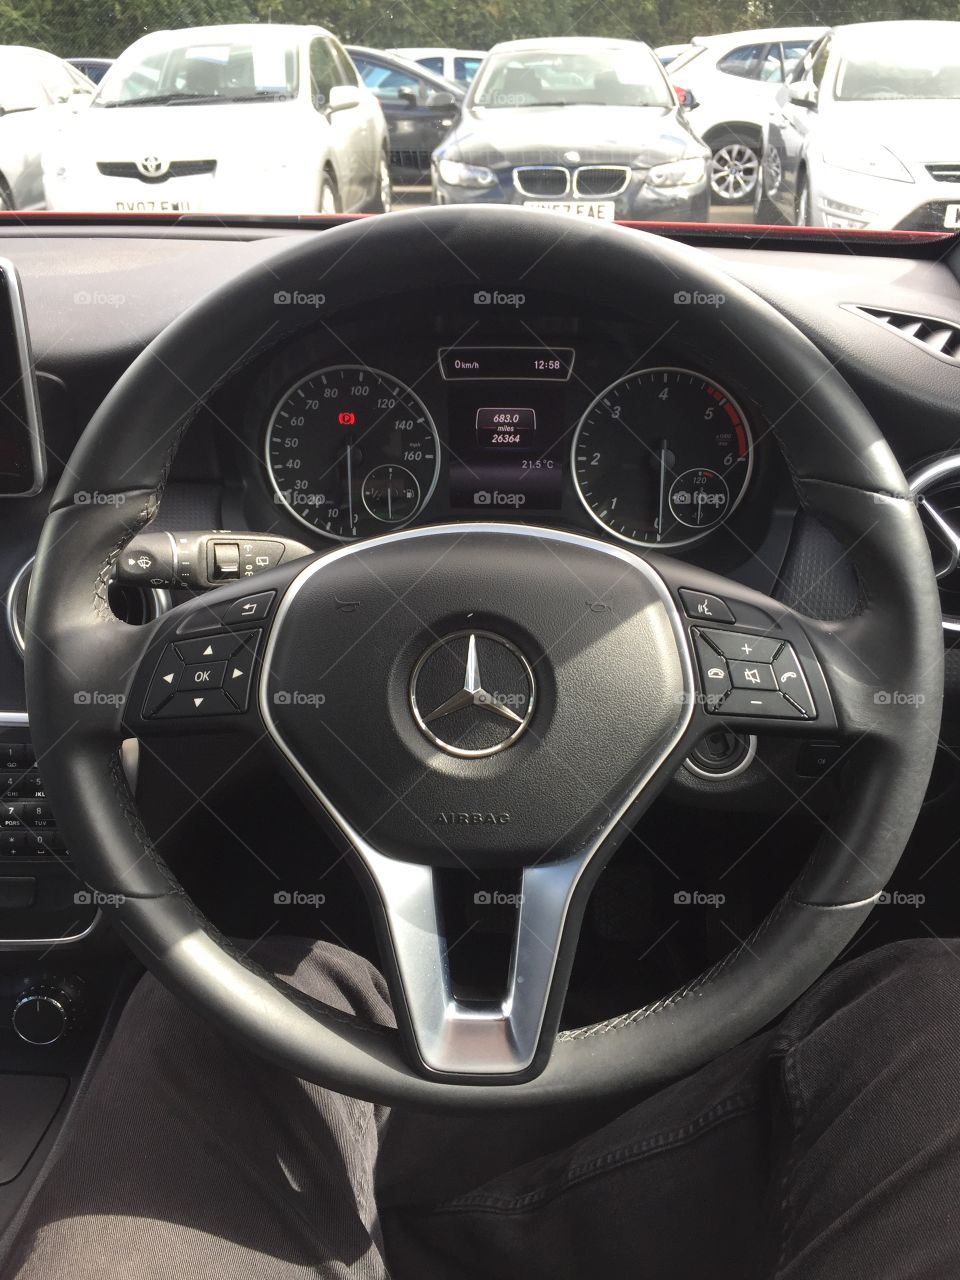 Inside a 2015 Mercedes A class 1.5 diesel